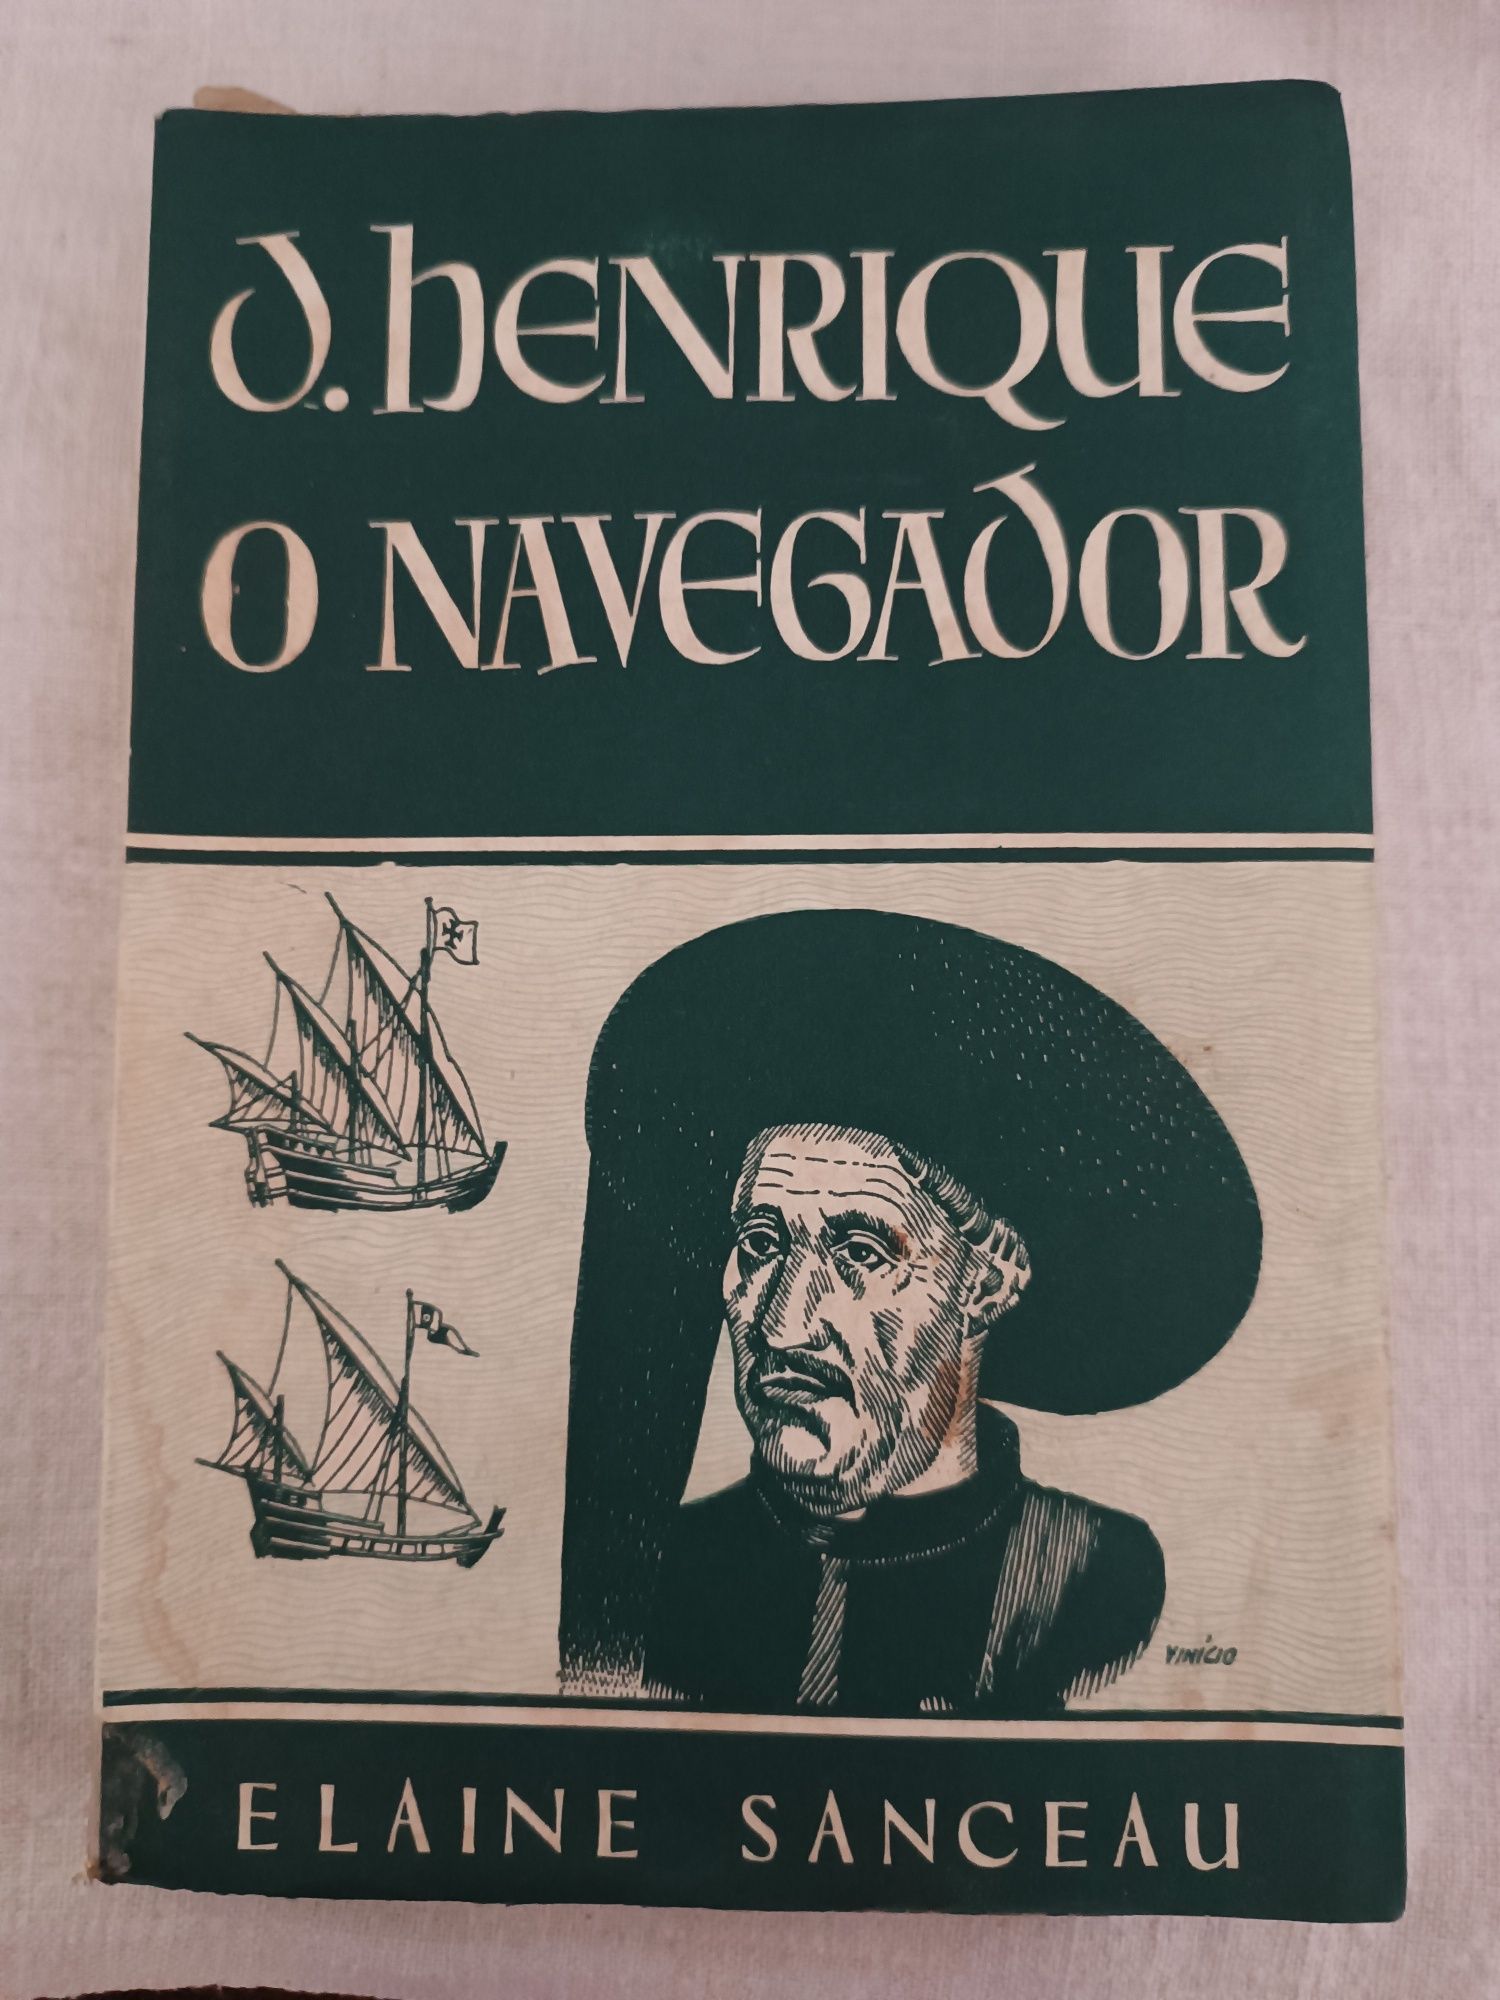 Livro "D. Henrique, o Navegador"